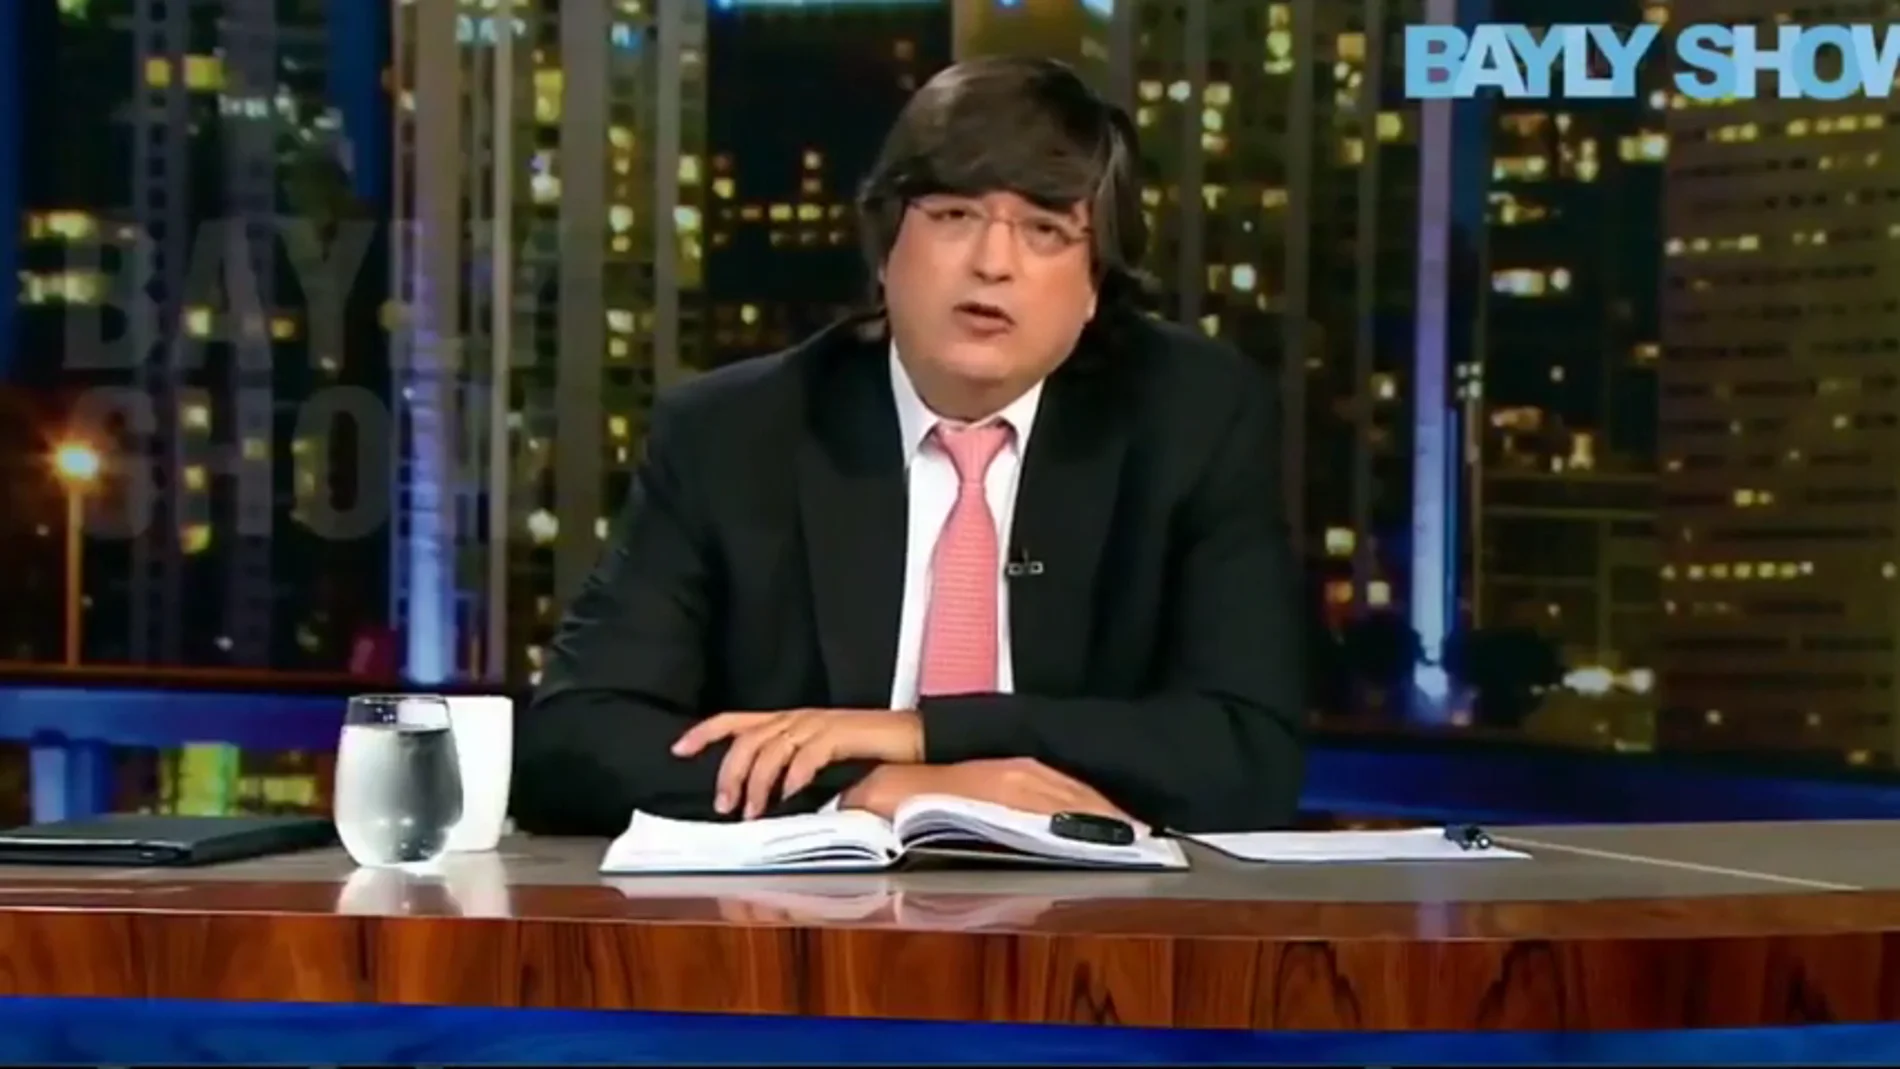 El presentador peruano Jaime Bayly asegura que ya sabía el plan para atentar contra Maduro: "EEUU aprobó la operación"